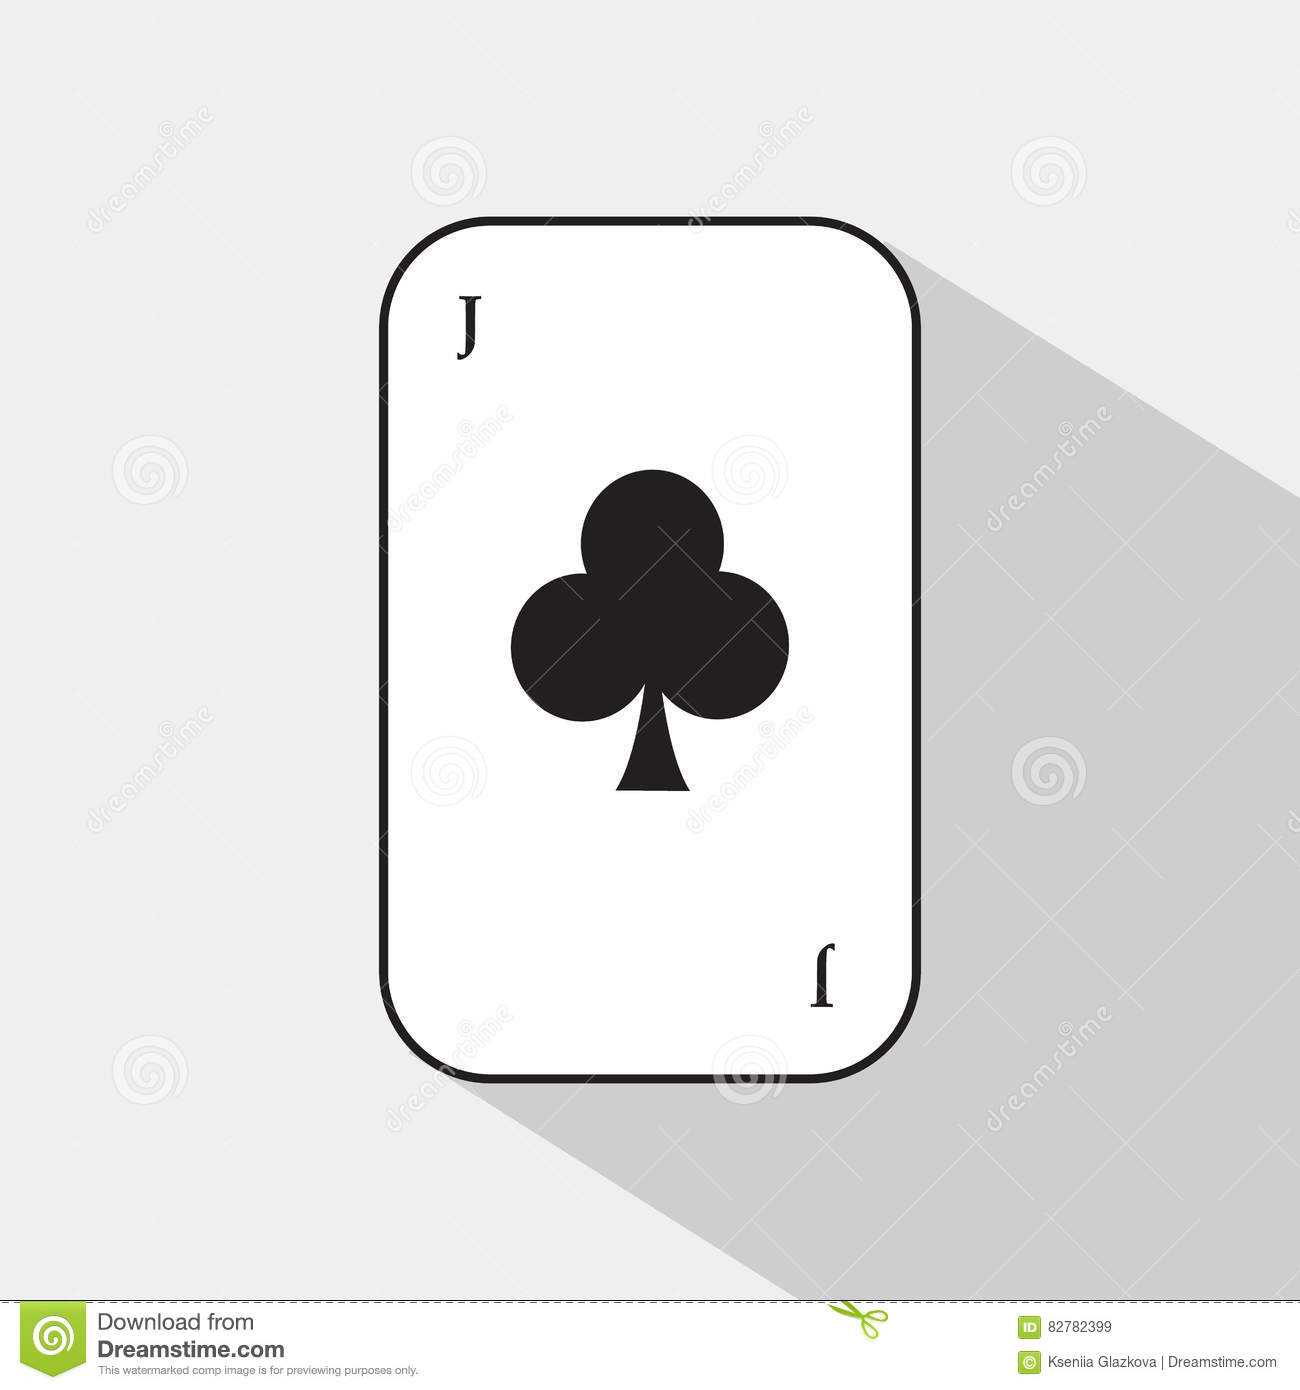 Joker Card Template ] – Joker Playing Card Female Intended For Joker Card Template